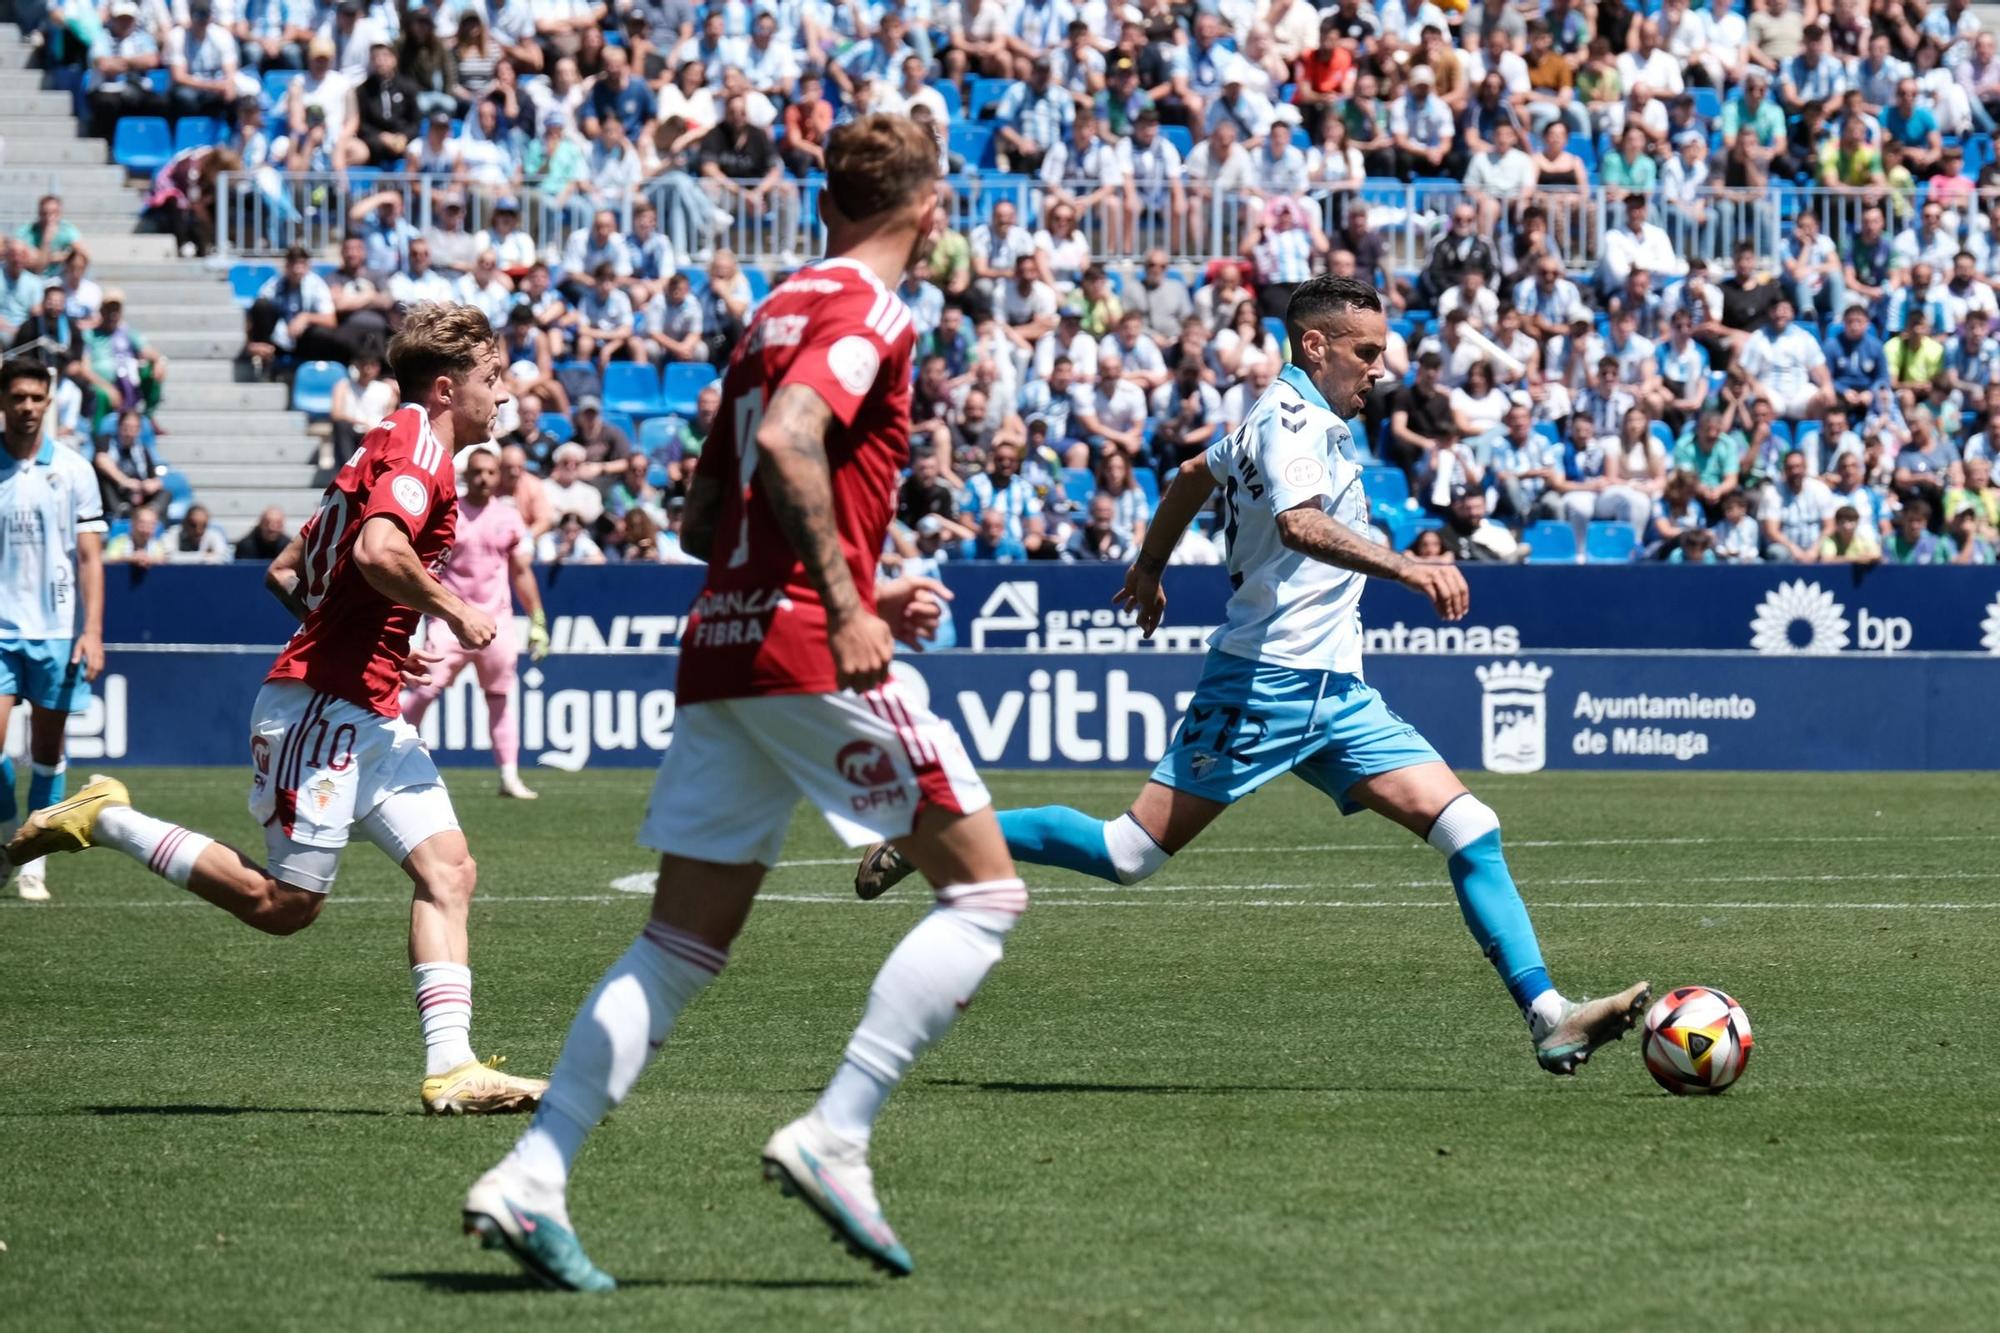 El Málaga CF - Real Murcia, en fotos